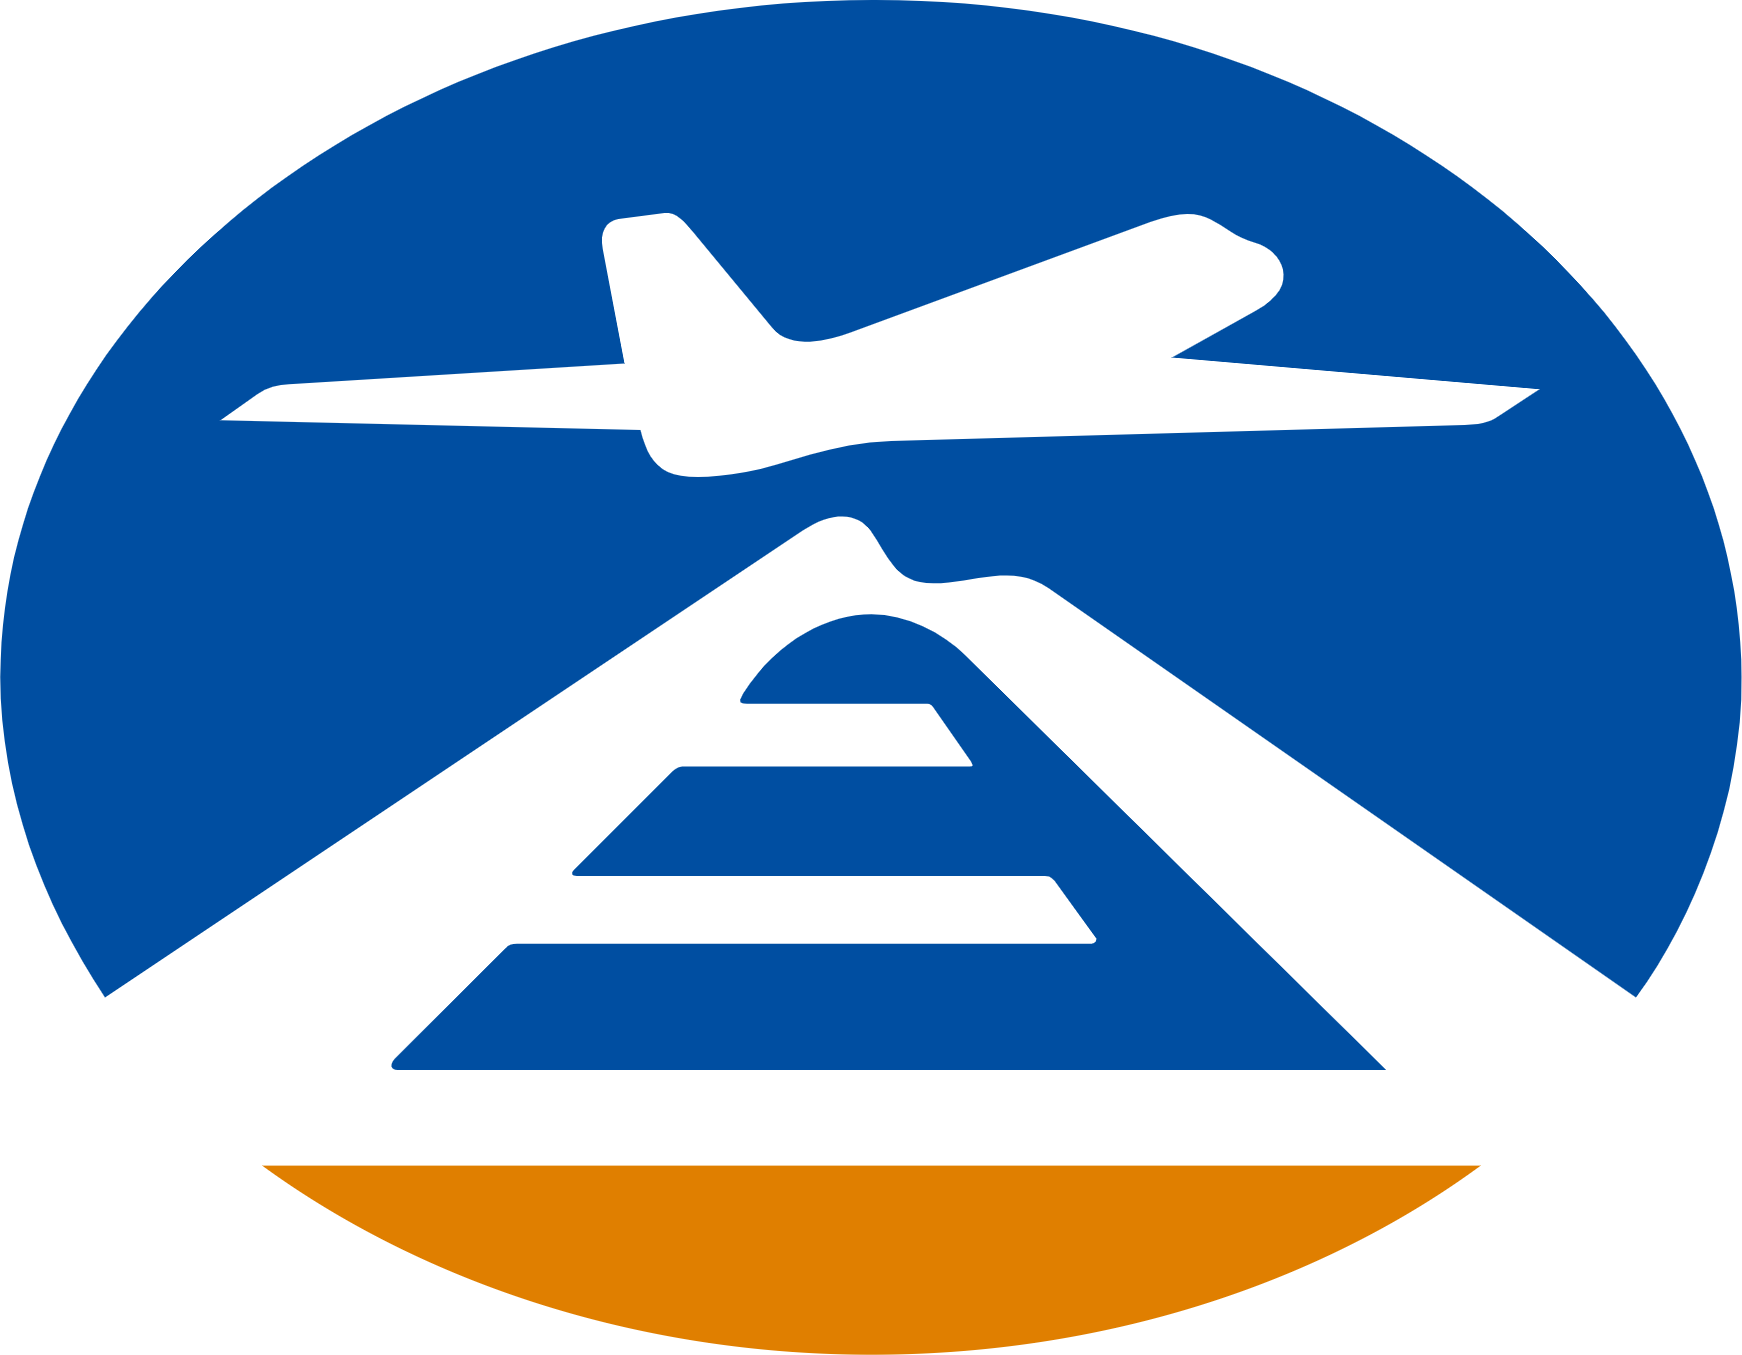 Beijing Airport logo (PNG transparent)